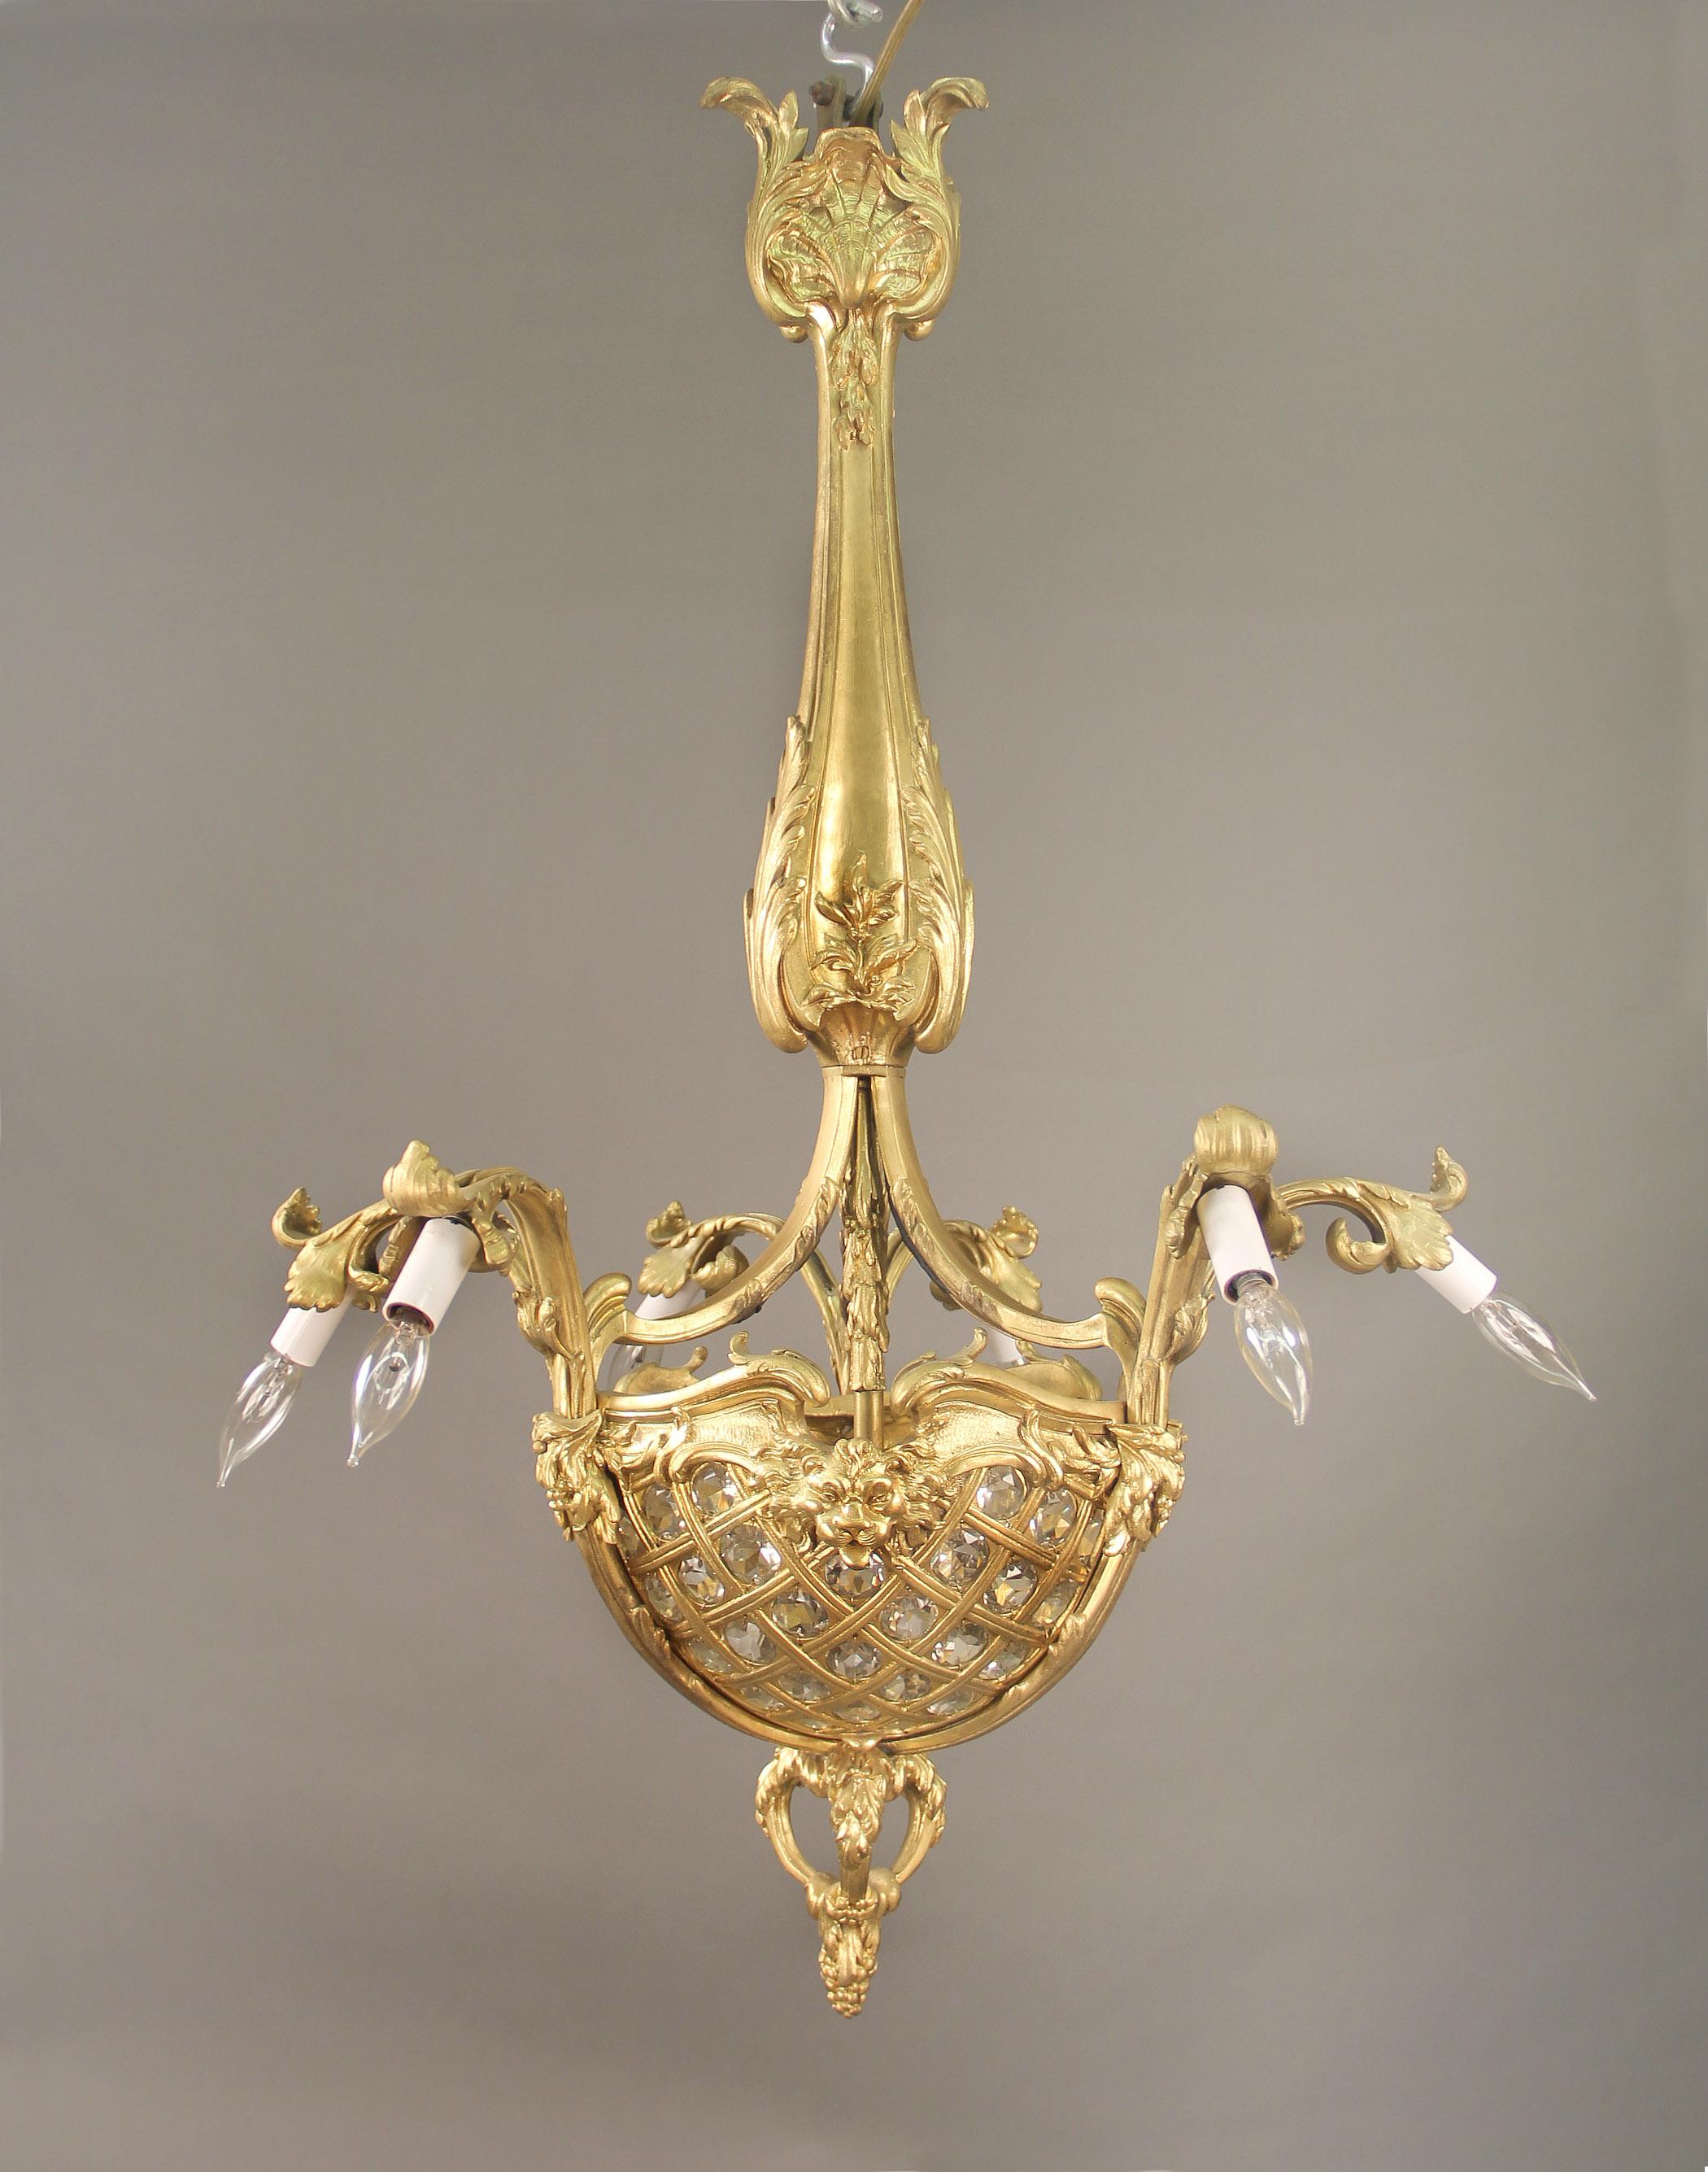 Intéressant lustre à neuf lumières en bronze doré du début du 20e siècle

La couronne est joliment décorée de coquillages, le corps descend jusqu'à un panier perlé à trois côtés, centré par de grands masques de lion, se terminant par un grand